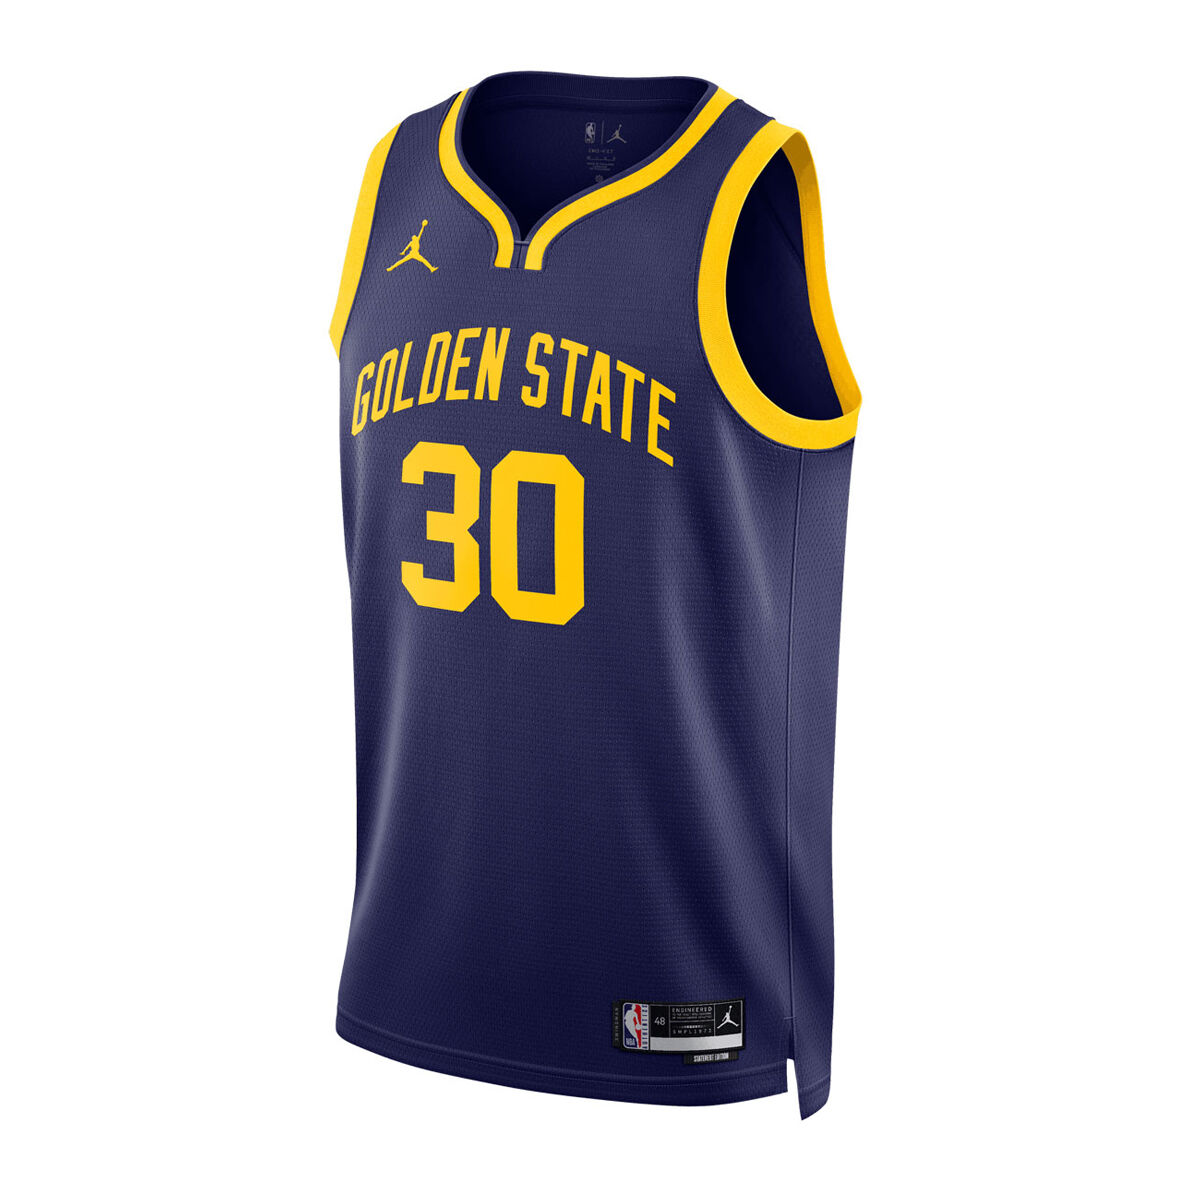 Official Mens Golden State Warriors Apparel & Merchandise